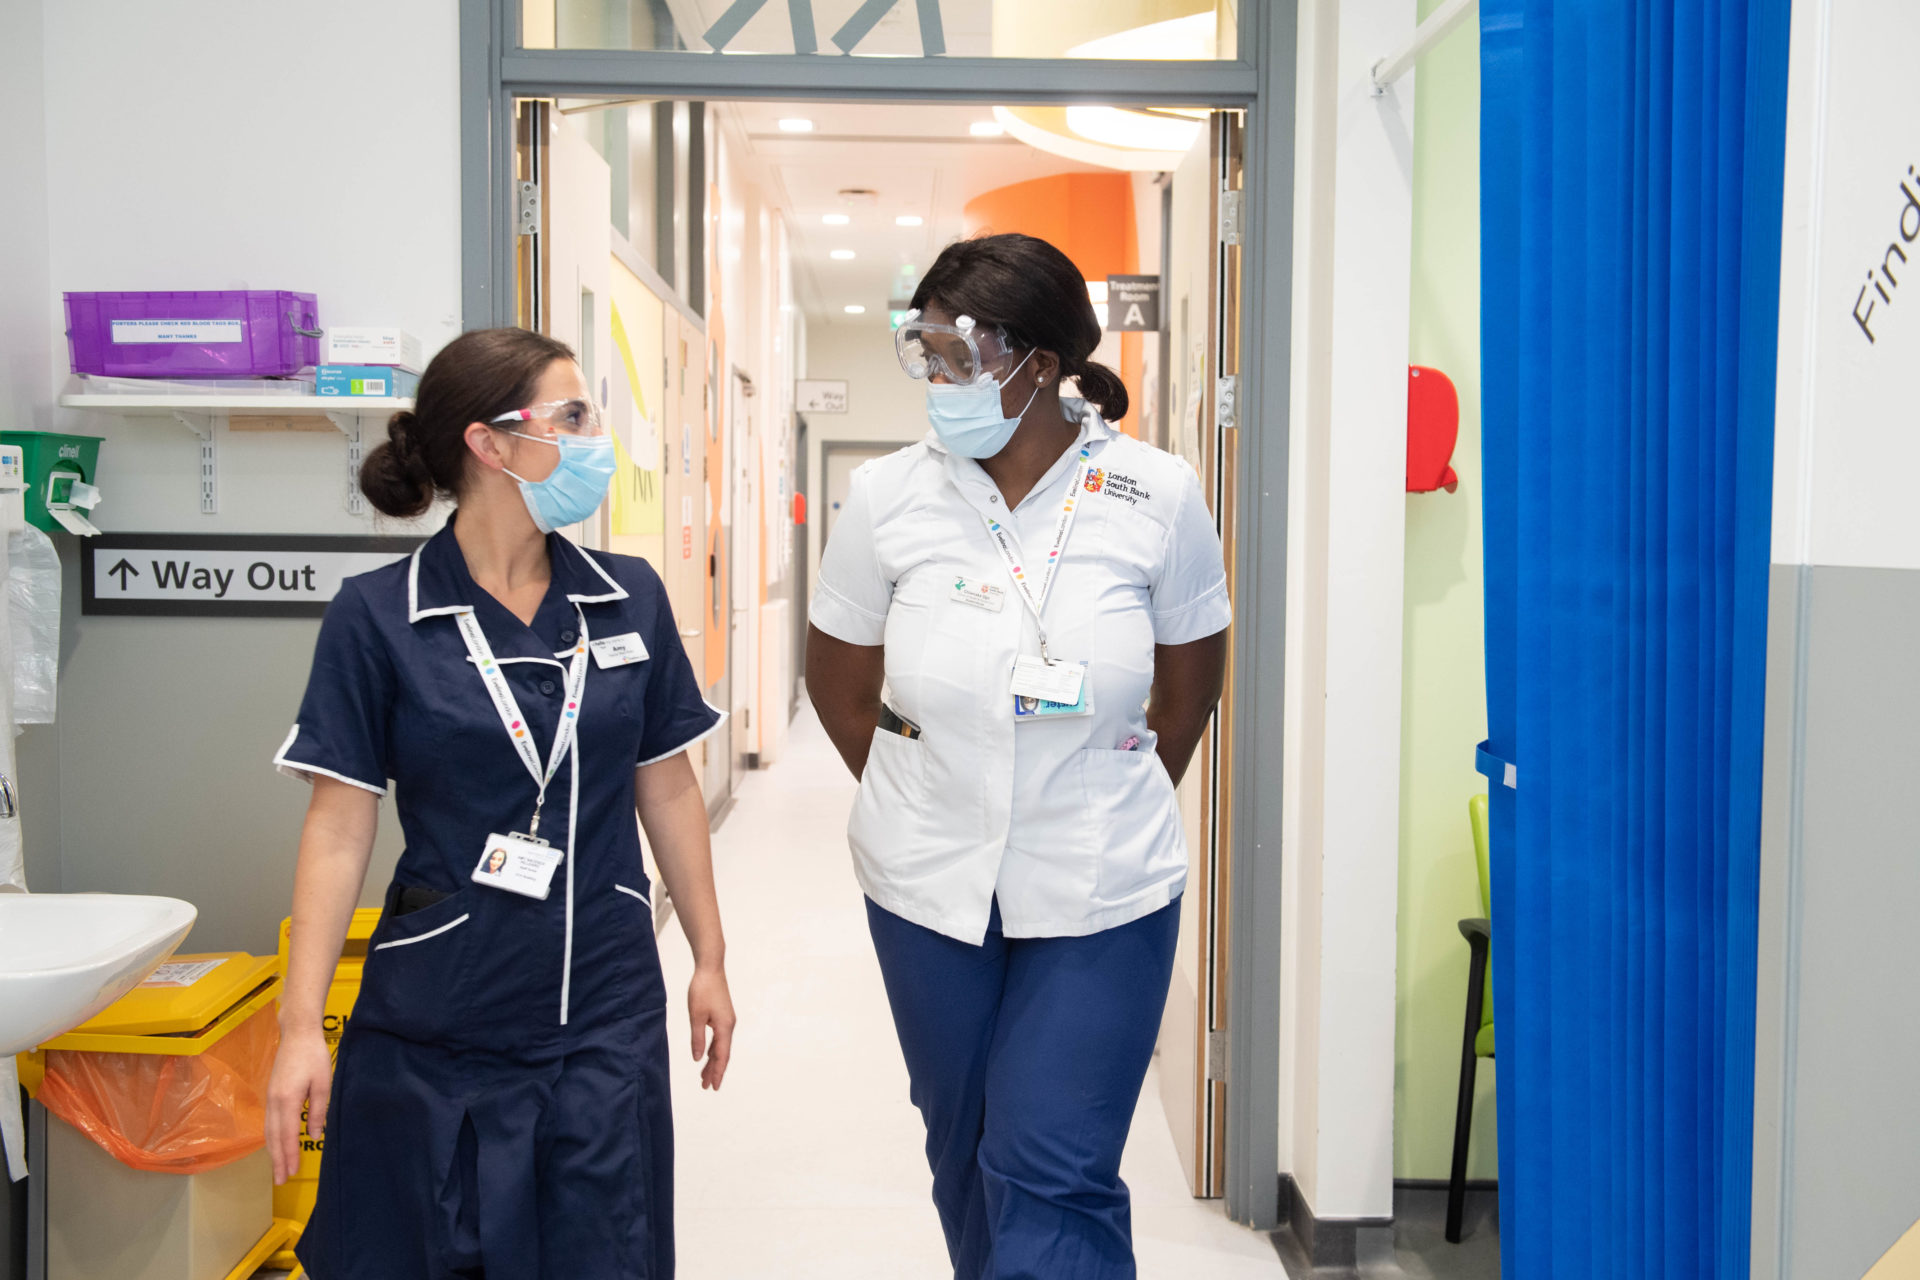 Two nurses walk and talk inside a hospital